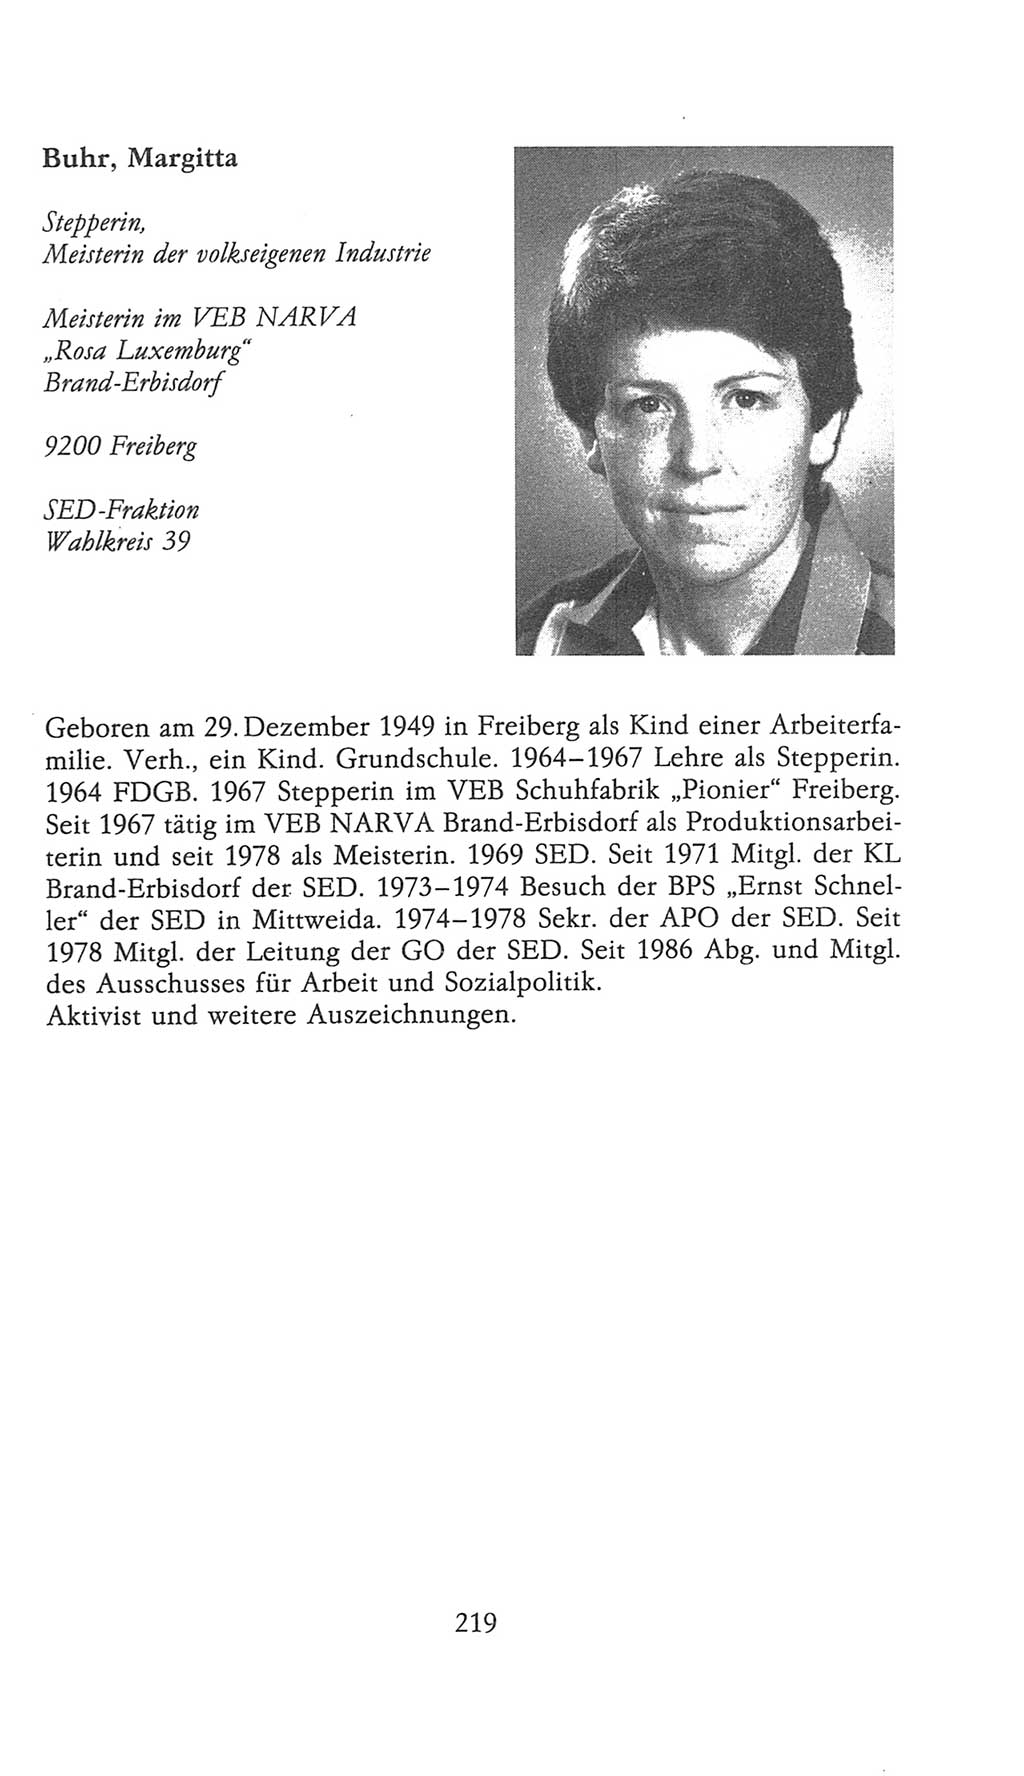 Volkskammer (VK) der Deutschen Demokratischen Republik (DDR), 9. Wahlperiode 1986-1990, Seite 219 (VK. DDR 9. WP. 1986-1990, S. 219)